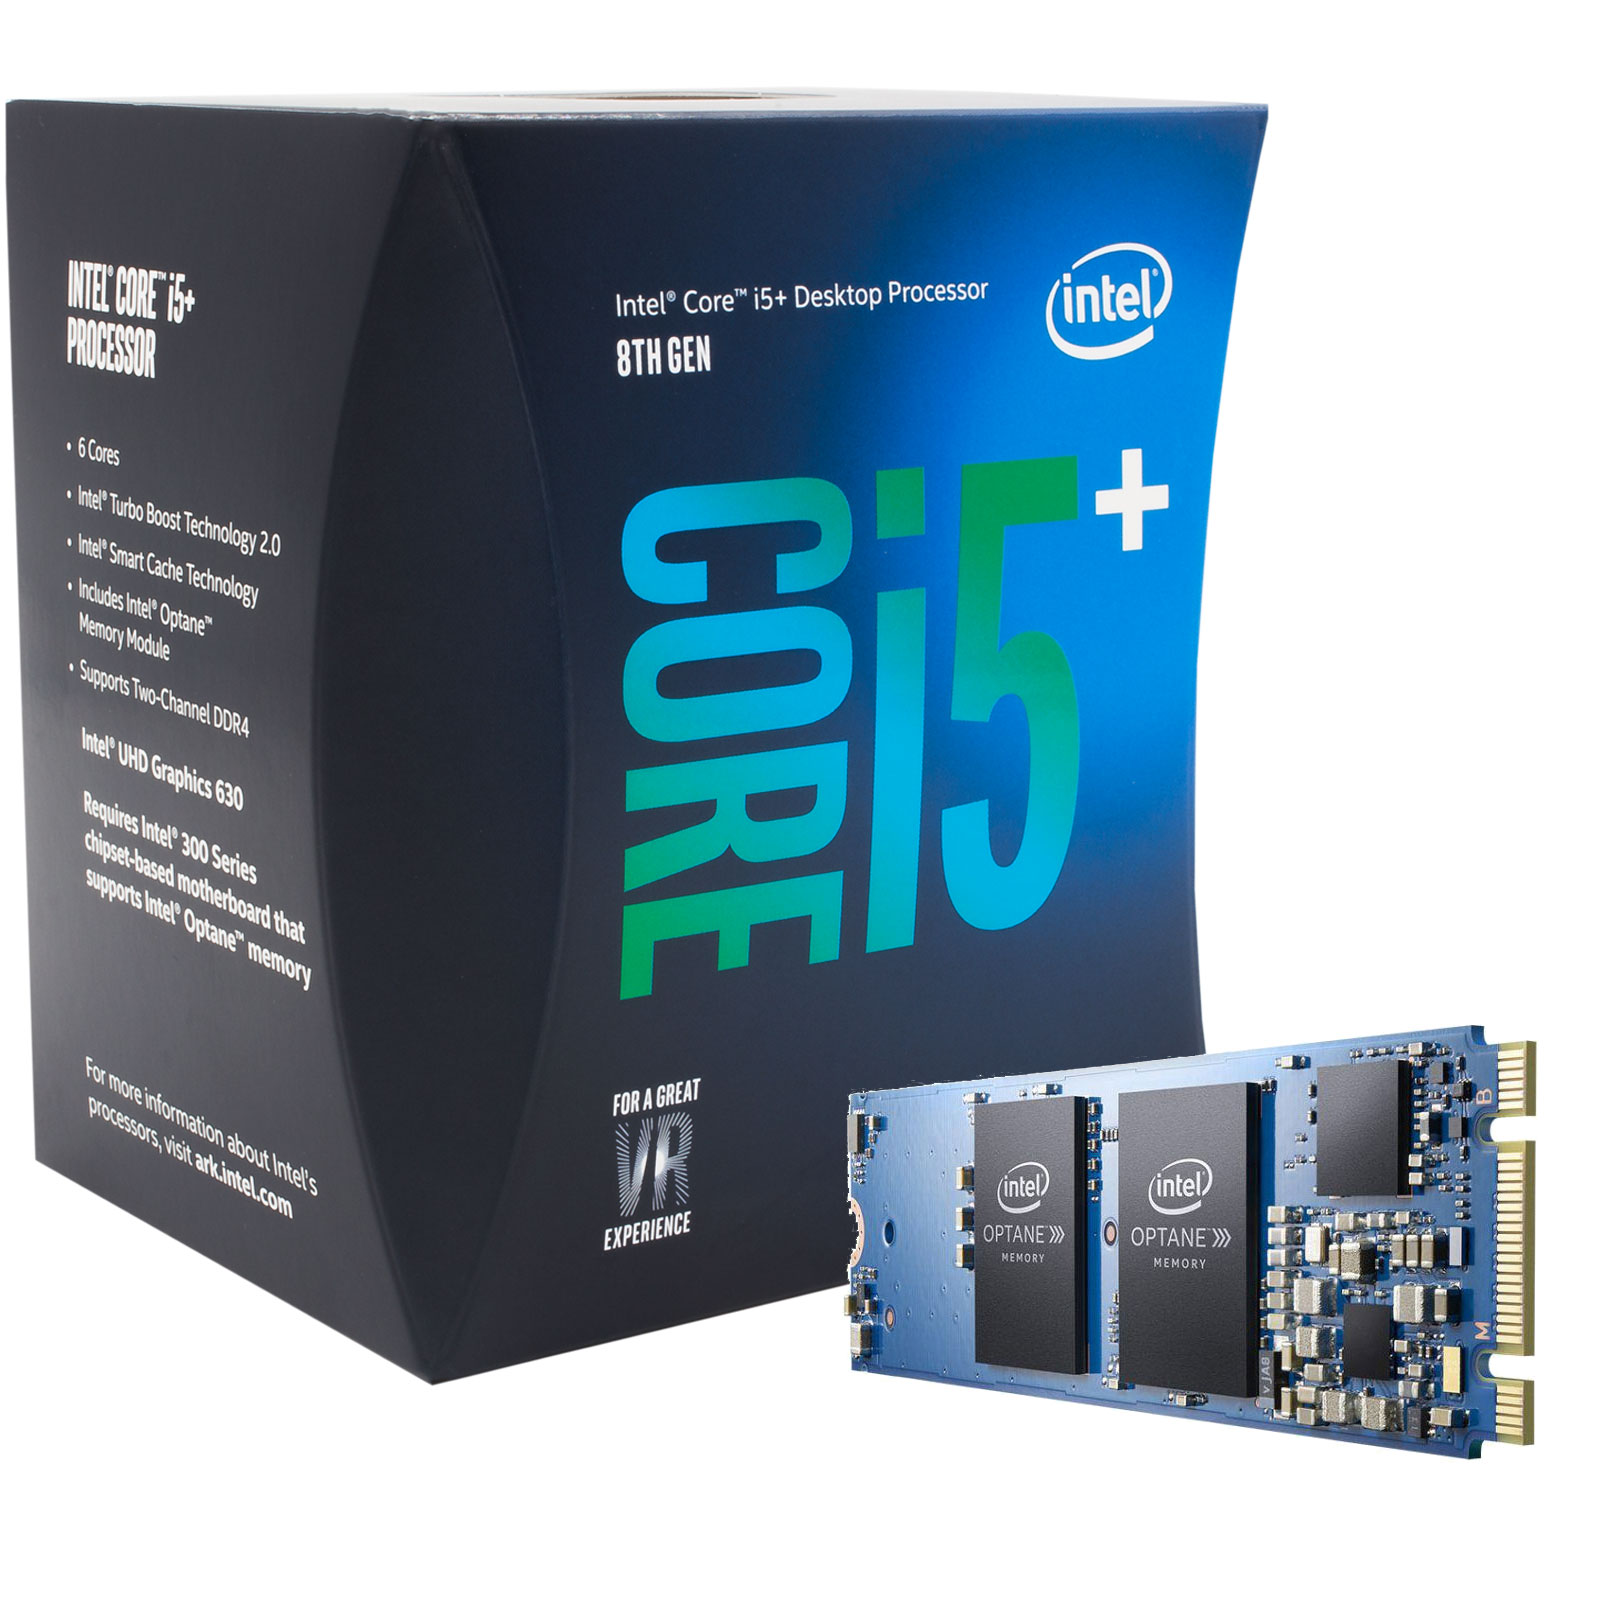 Интел коре i5 8400. Core i5 8400. Процессор Intel Core i5-8500. Intel Core i5-8400 lga1151 v2, 6 x 2800 МГЦ. I5 8500.